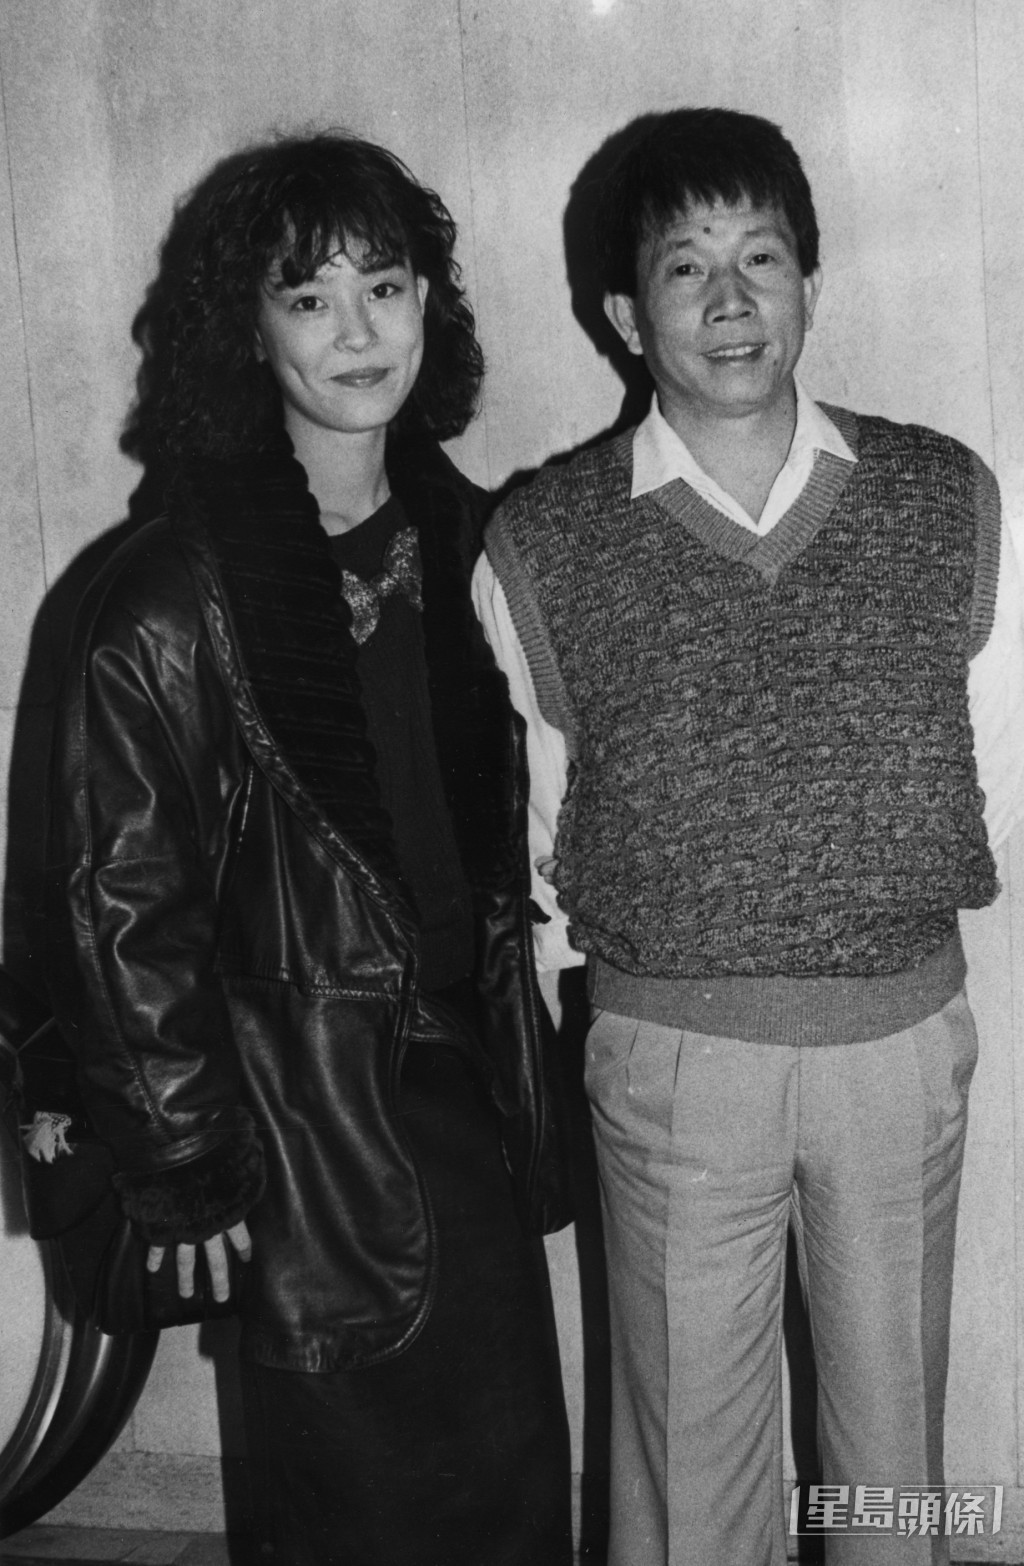 翁靜晶在1984年與劉家良結婚，兩人年紀相差30載。